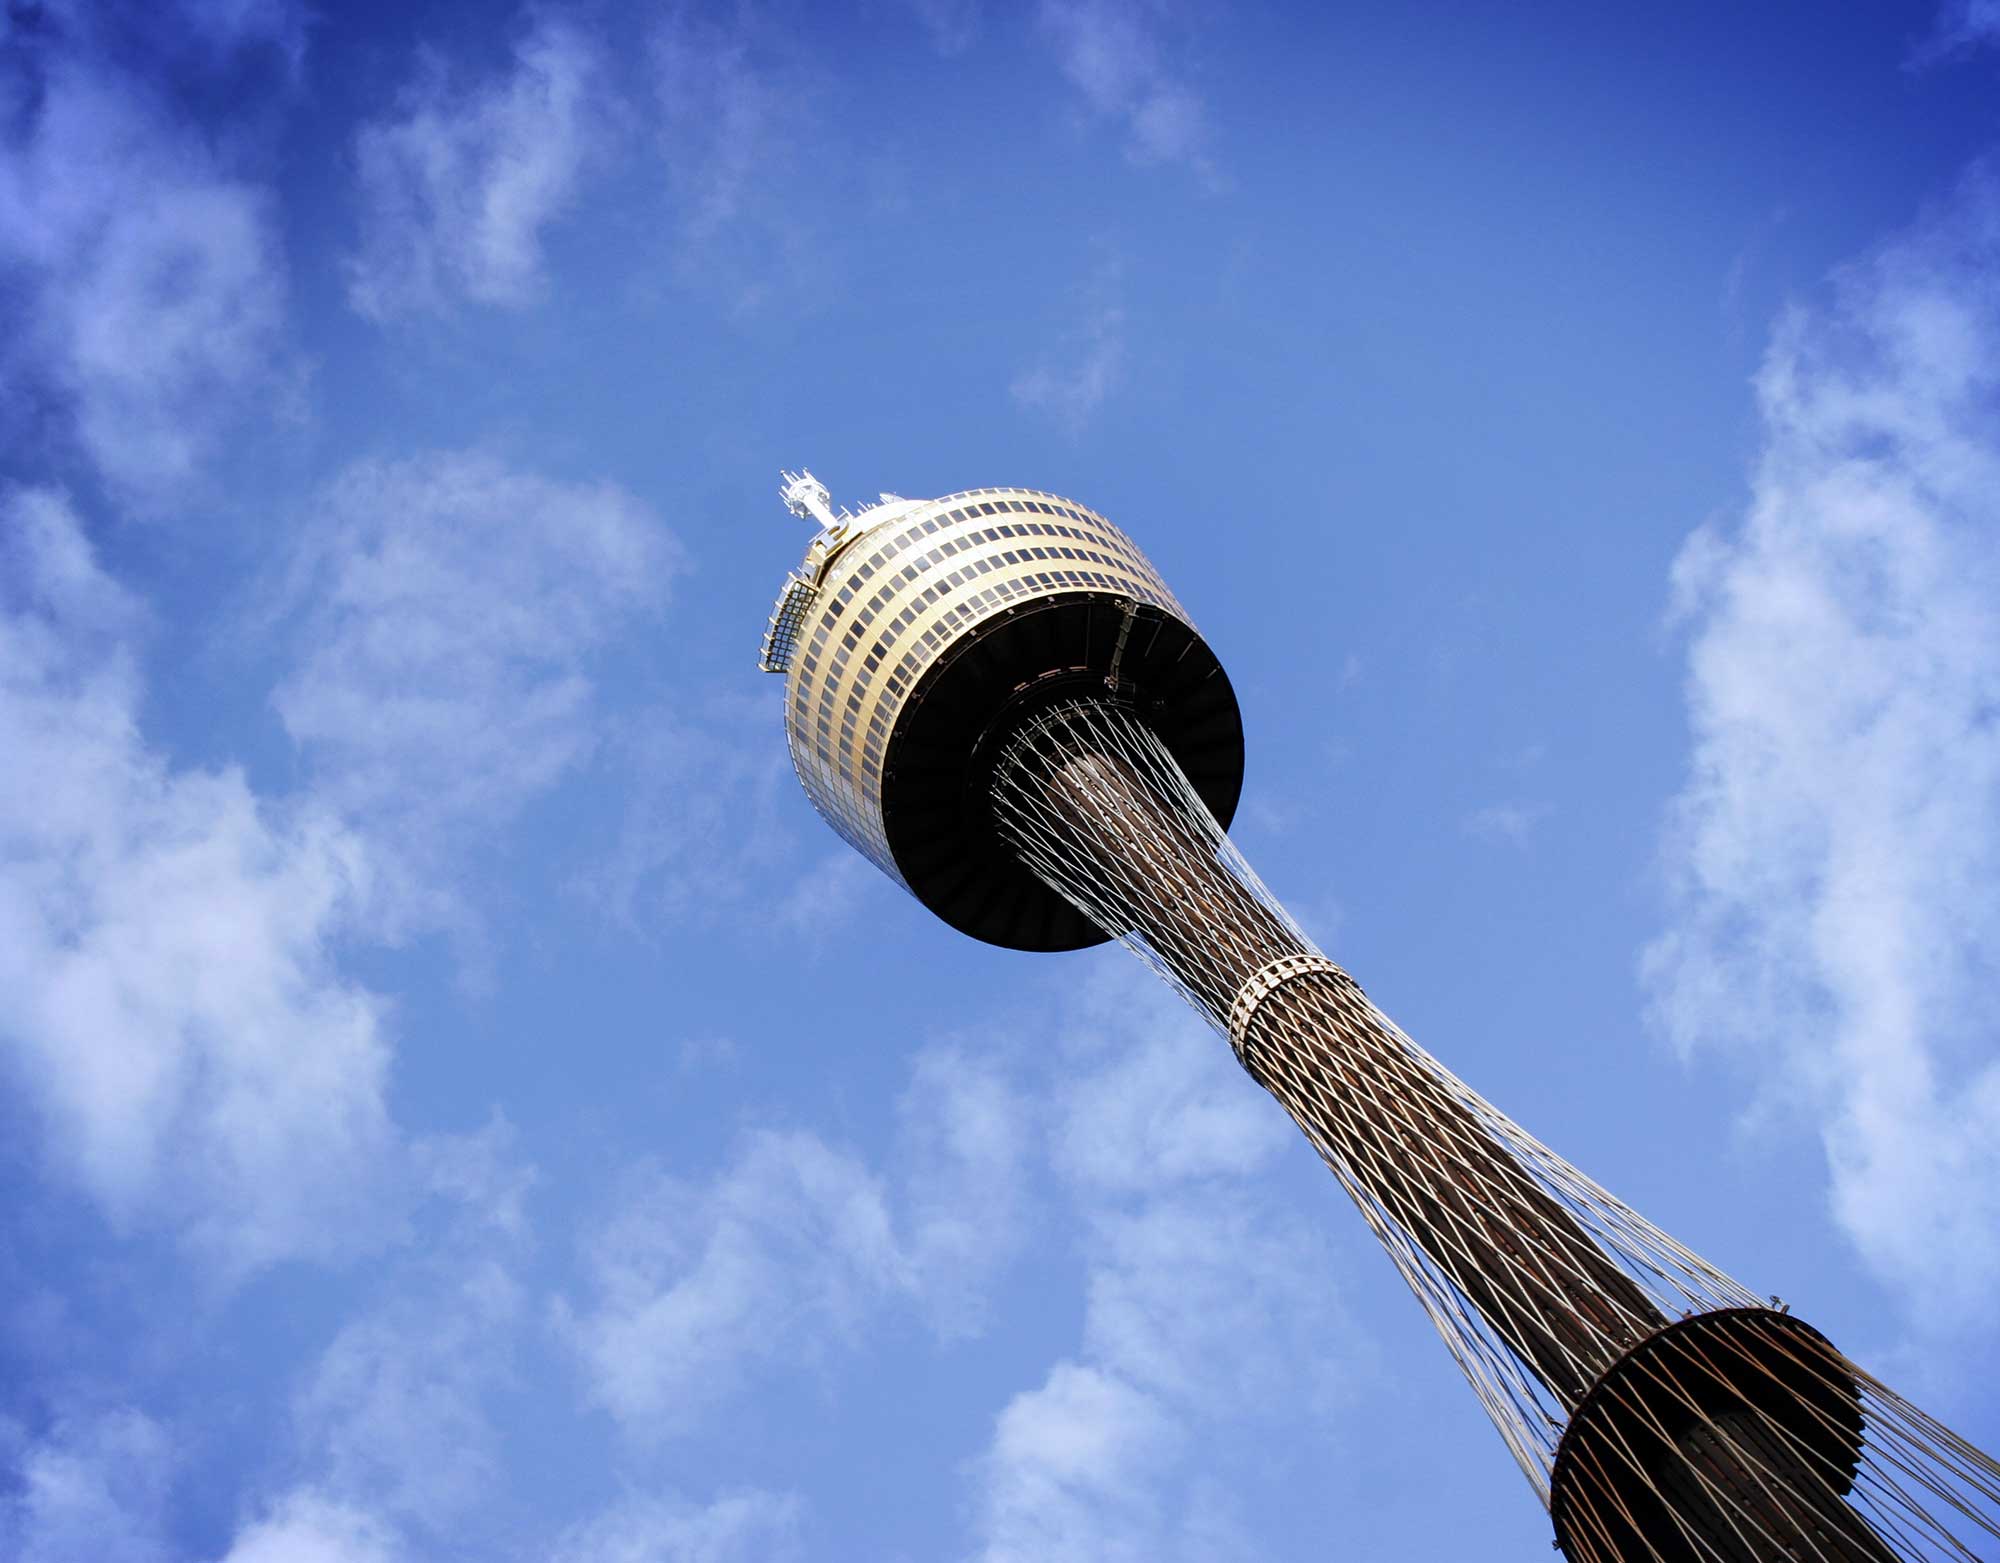 11 Famous Landmarks in Sydney